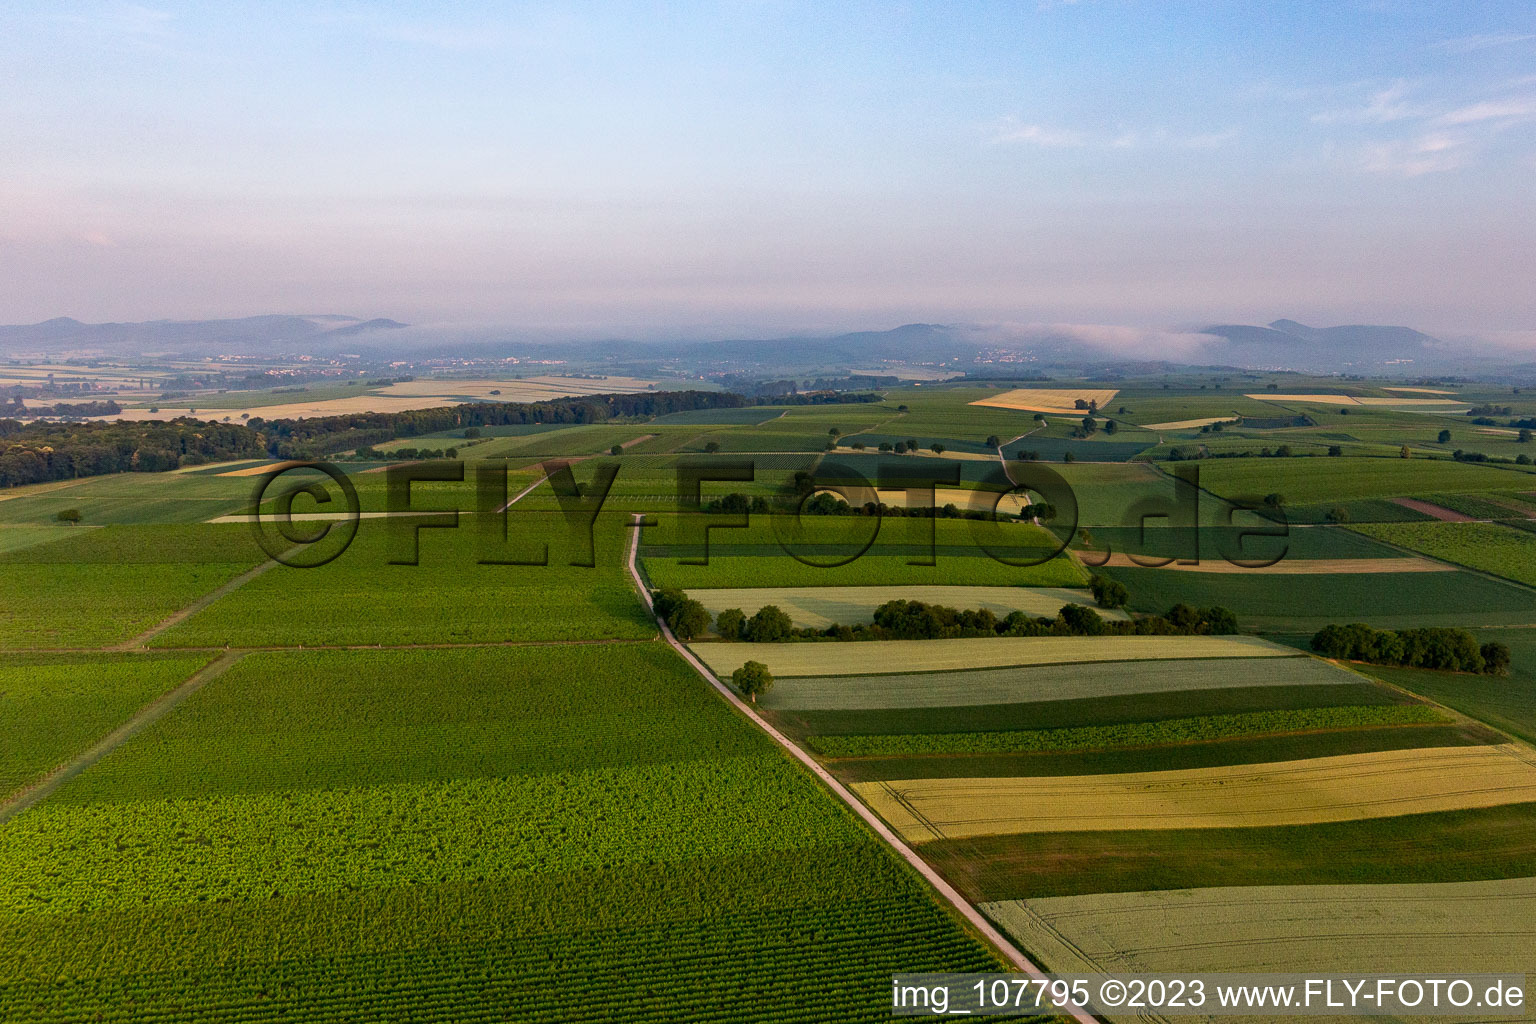 Winden im Bundesland Rheinland-Pfalz, Deutschland von einer Drohne aus